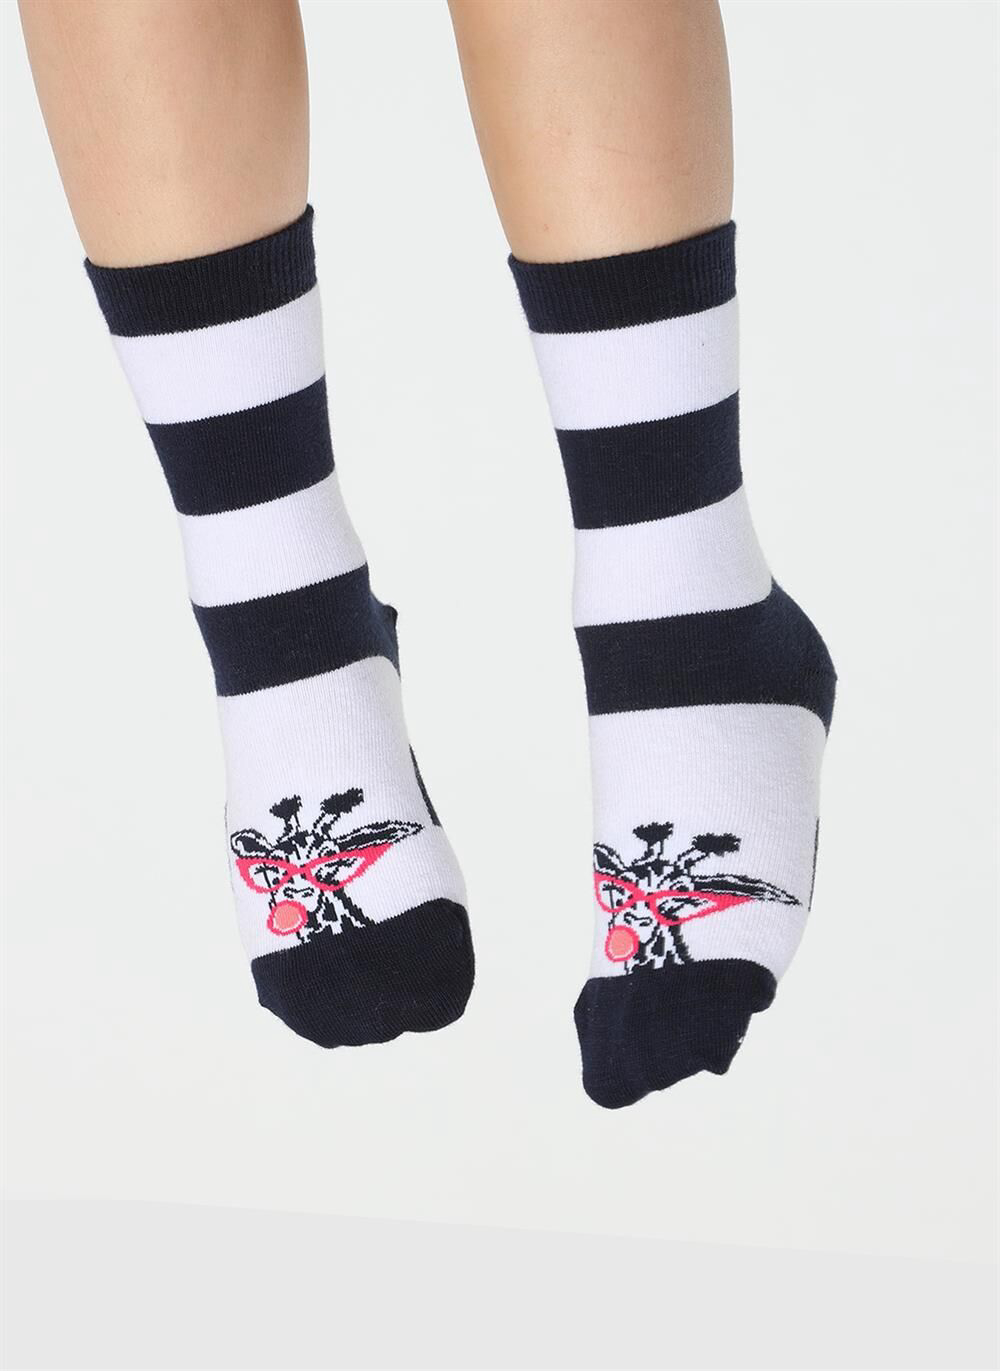 Socks - Girls' Children's Striped Socks